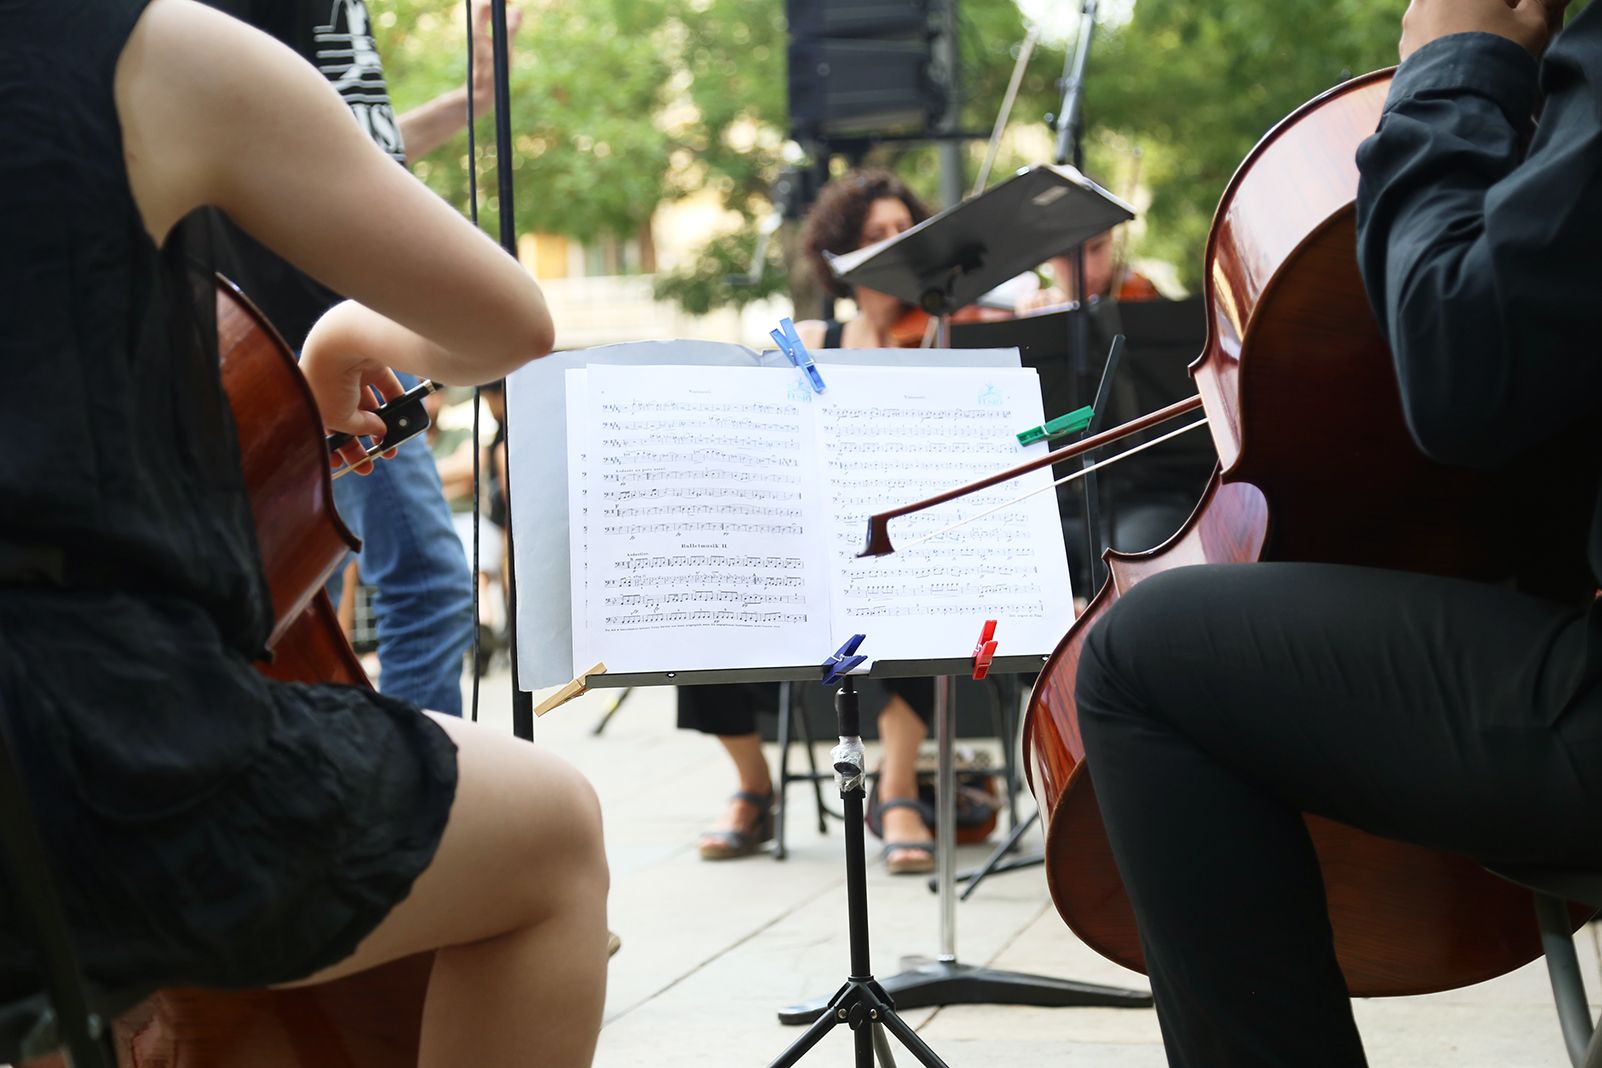 Sant Cugat ha acollit diferents propostes musicals durant el Dia Internacional de la Música. FOTO: Anna Bassa